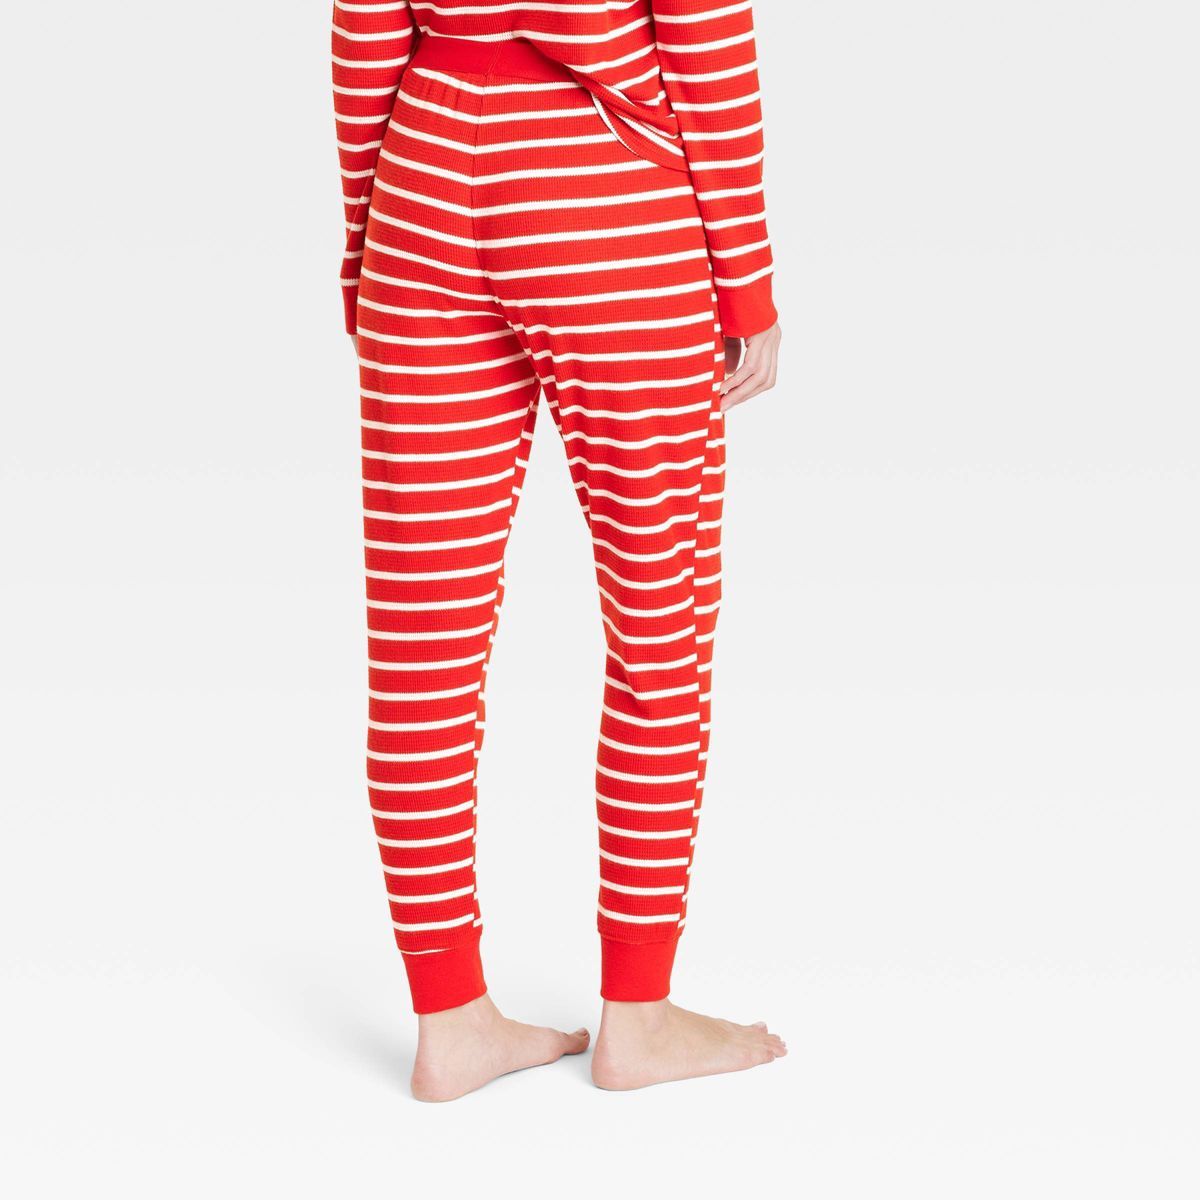 Women's Striped Matching Family Thermal Pajama Pants - Wondershop™ Red | Target